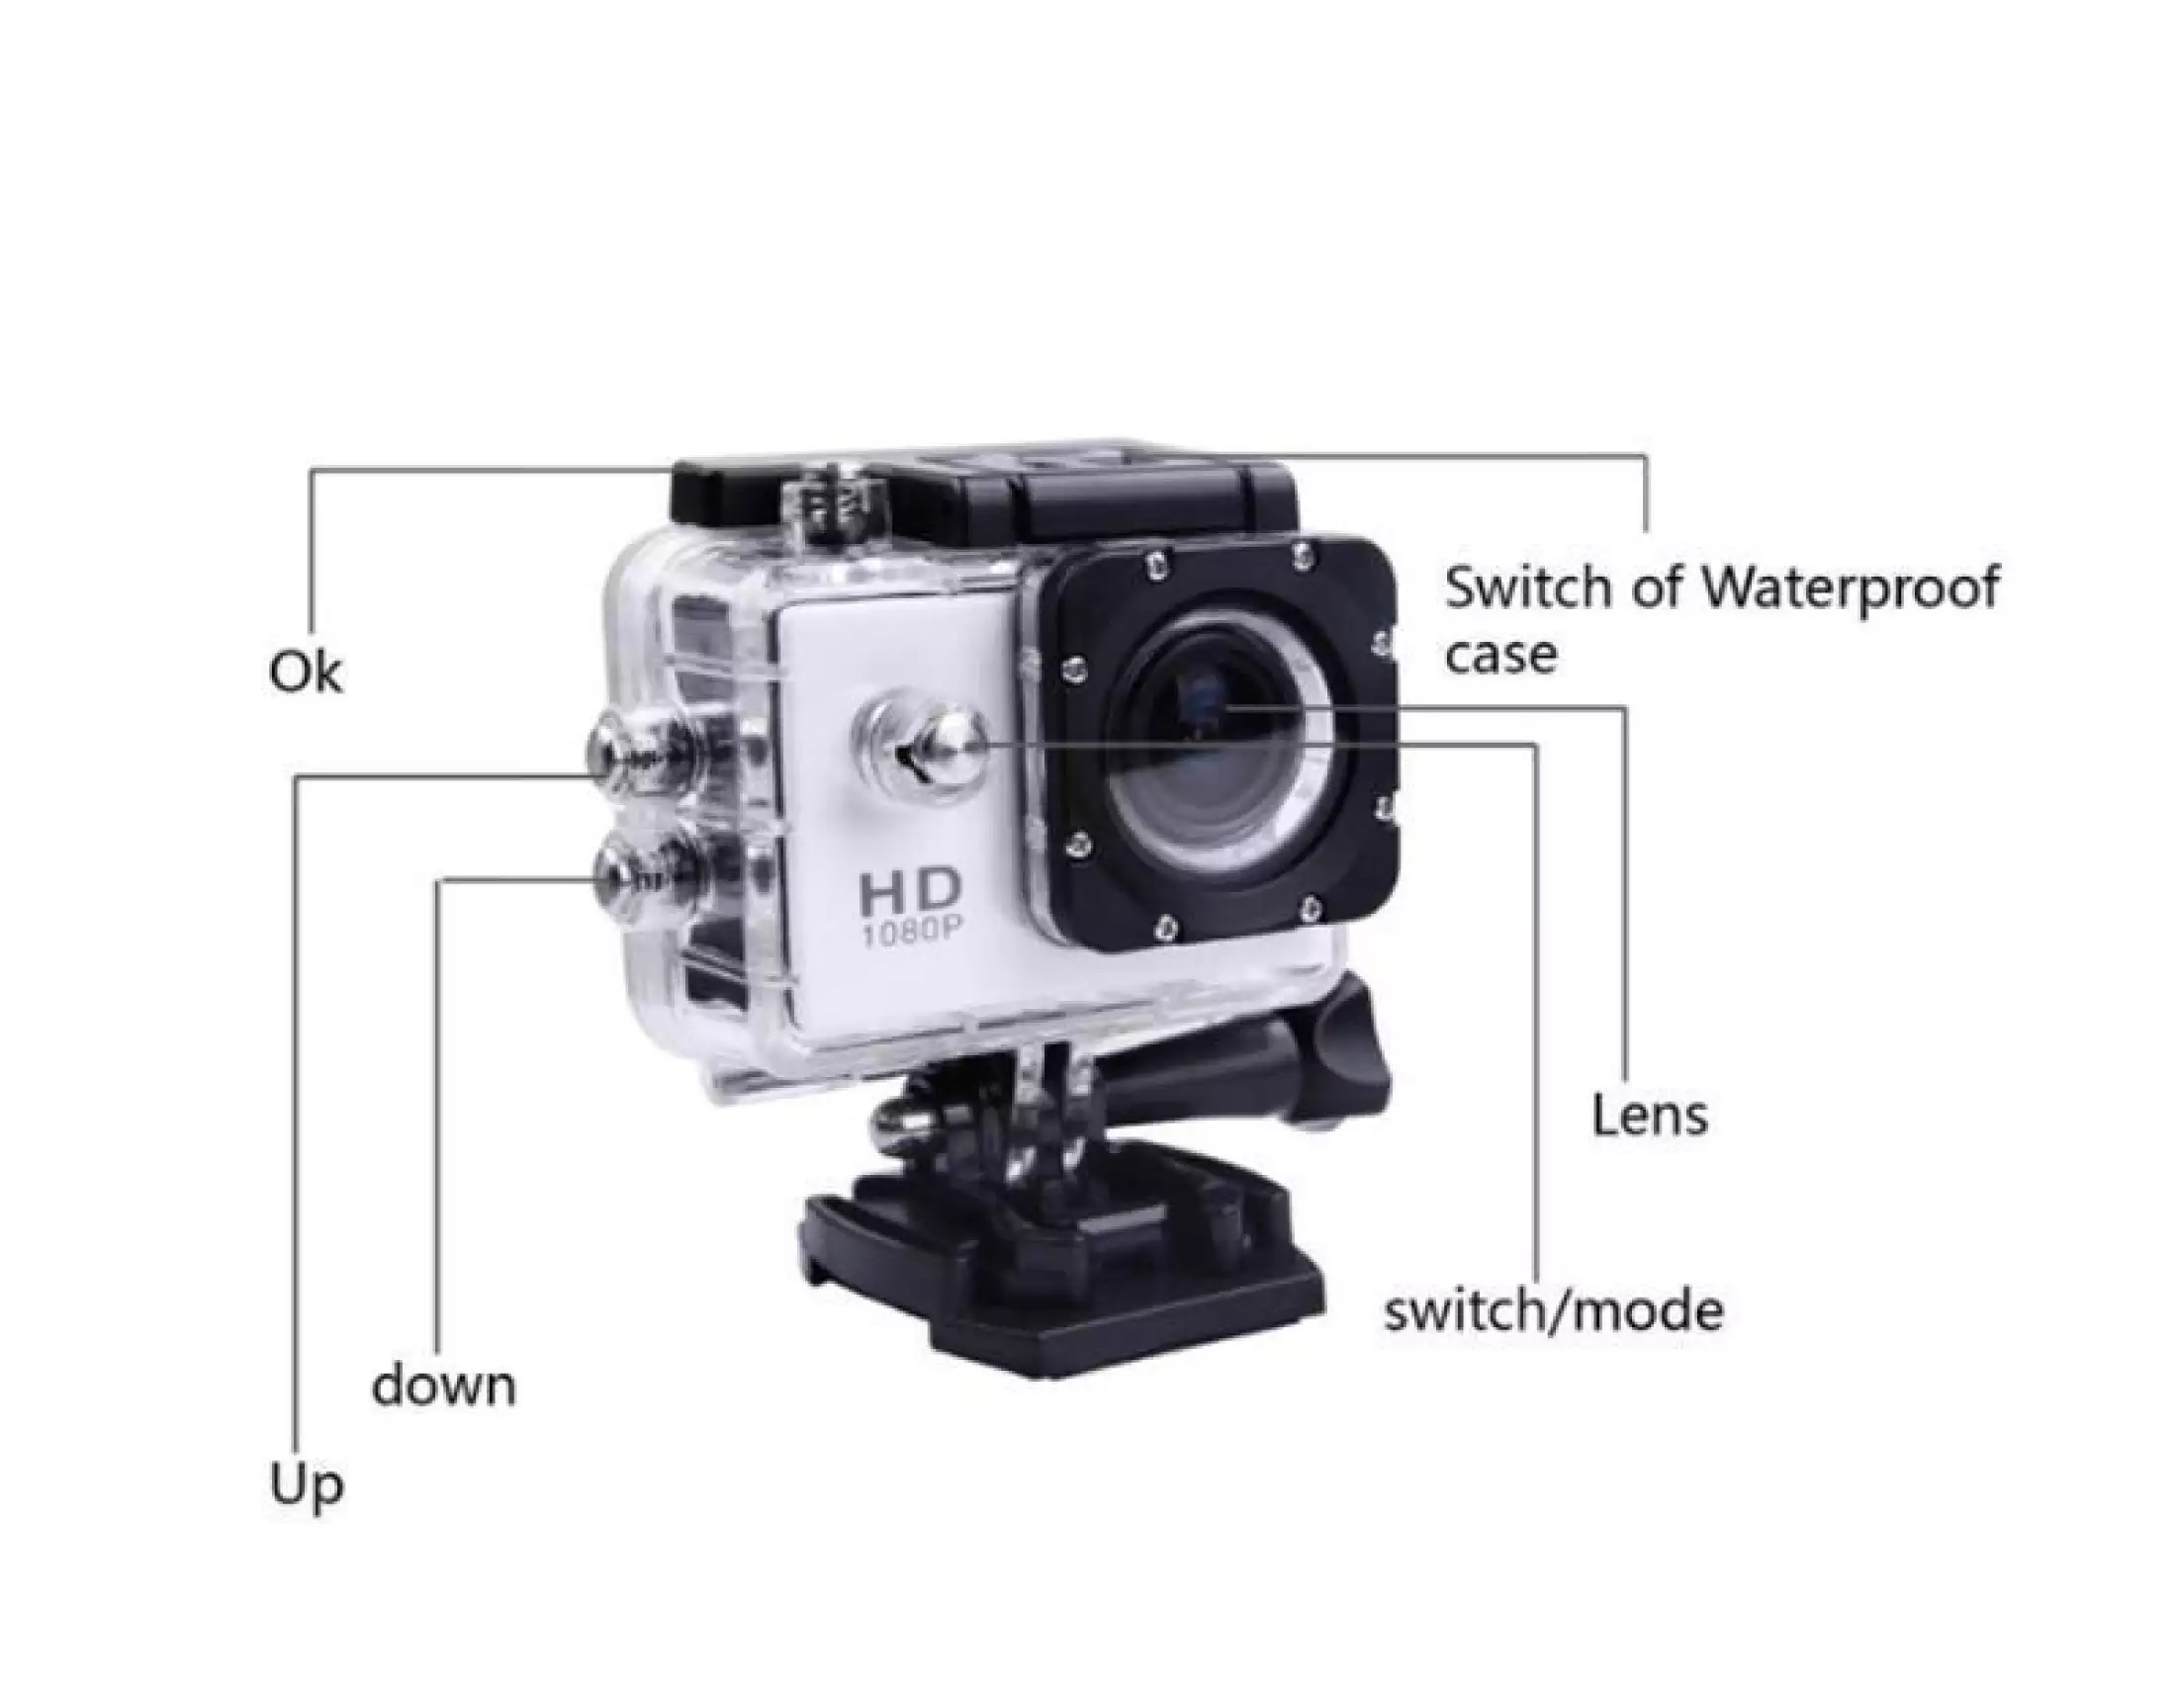 ลองดูภาพสินค้า ขายดีสุด กล้องกันน้ำ ถ่ายใต้น้ำ กล้องกลางแจ้ง กล้อง Action Camera 4K กล้องติดหมวกกันน็อค